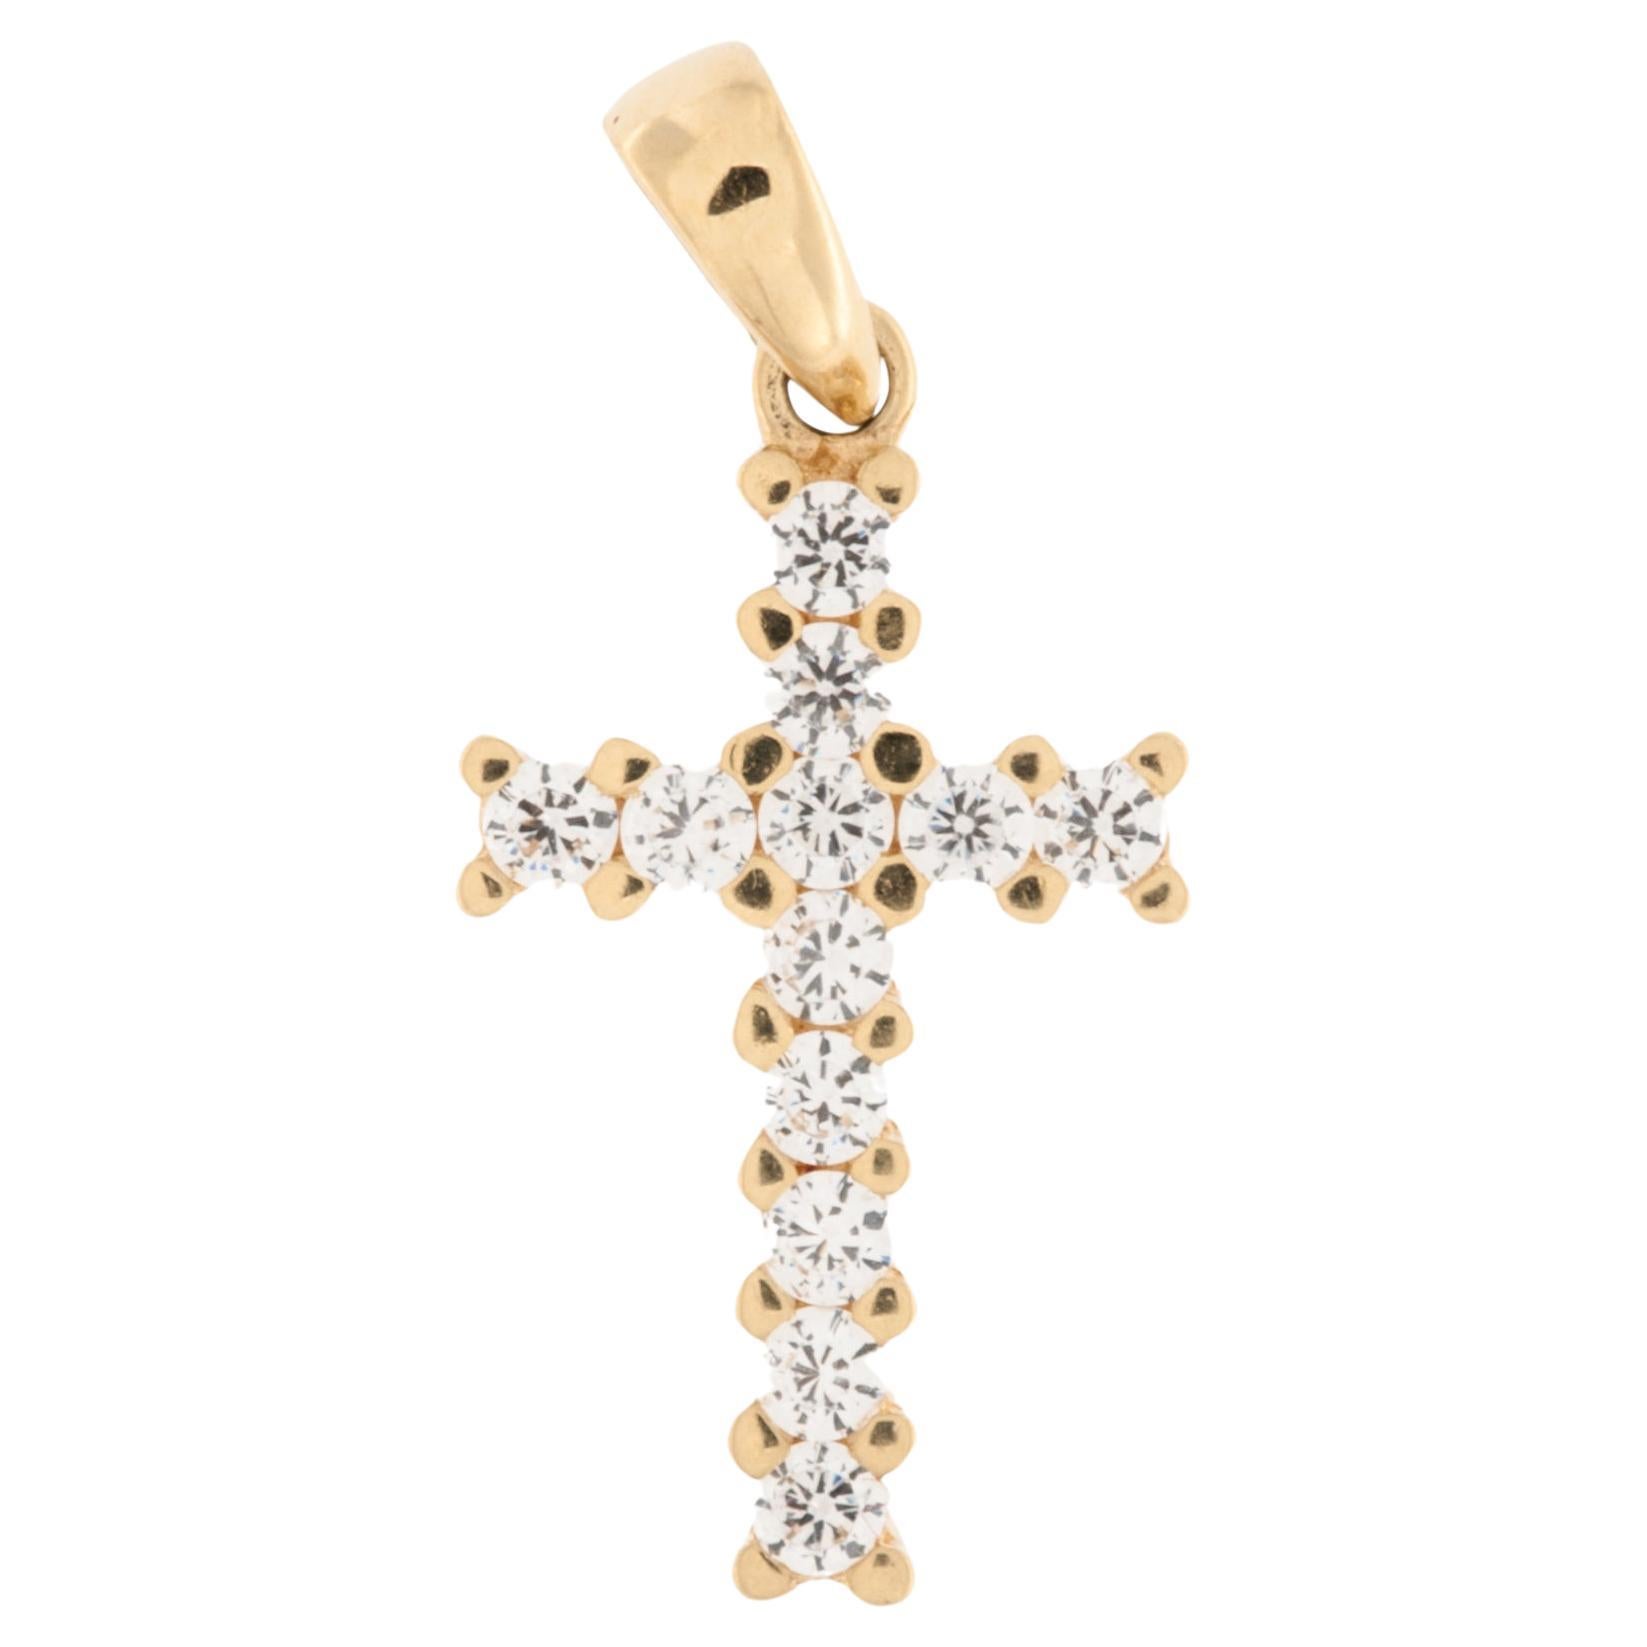 Croix suisse en or jaune 18 carats avec diamants